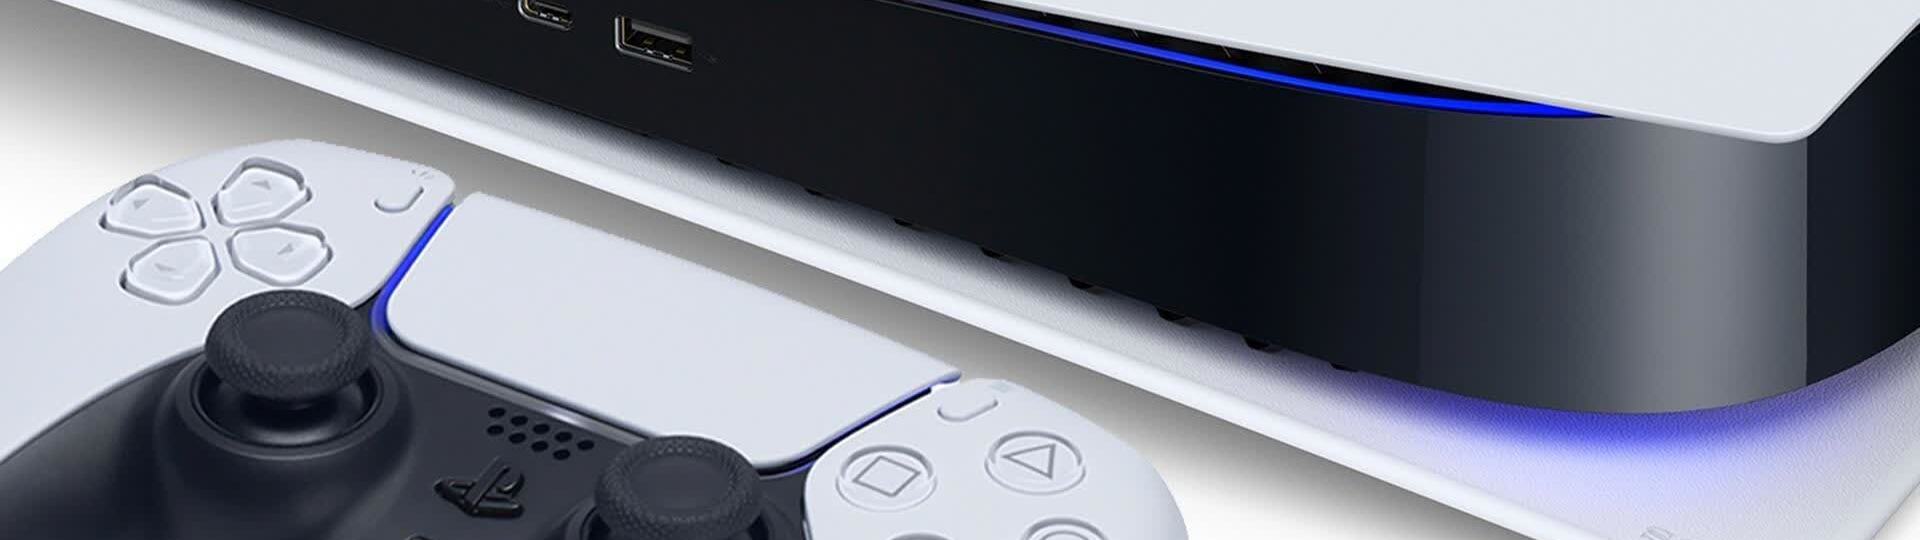 PS5 update už je aktivní a přinesl i pár nových nastavení | Novinky